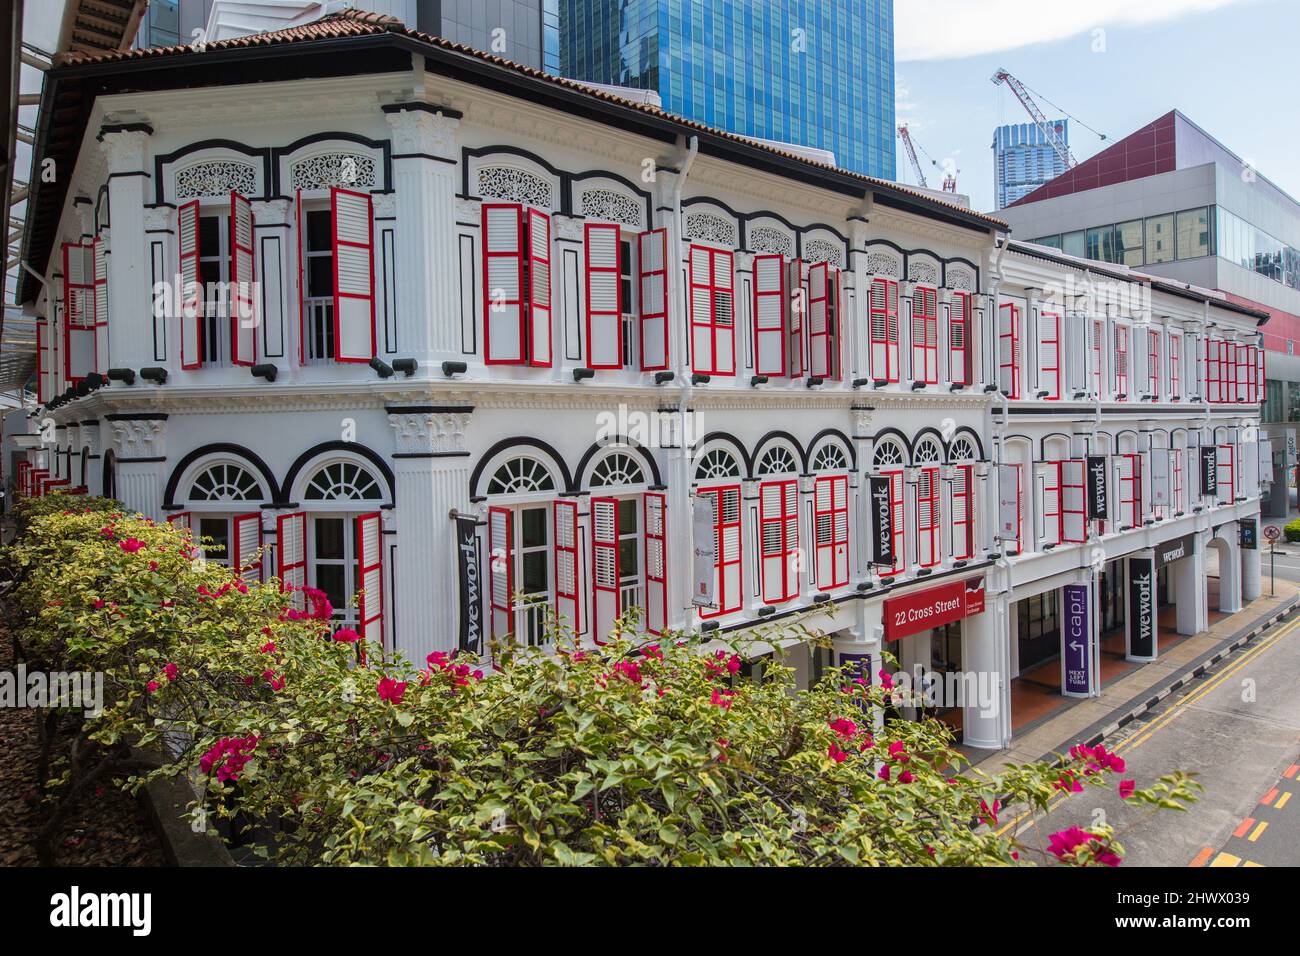 Alte Ladengeschäfte, die in eine kommerzielle Struktur für Unternehmen umgestaltet wurden. Chinatown, Singapur. Stockfoto